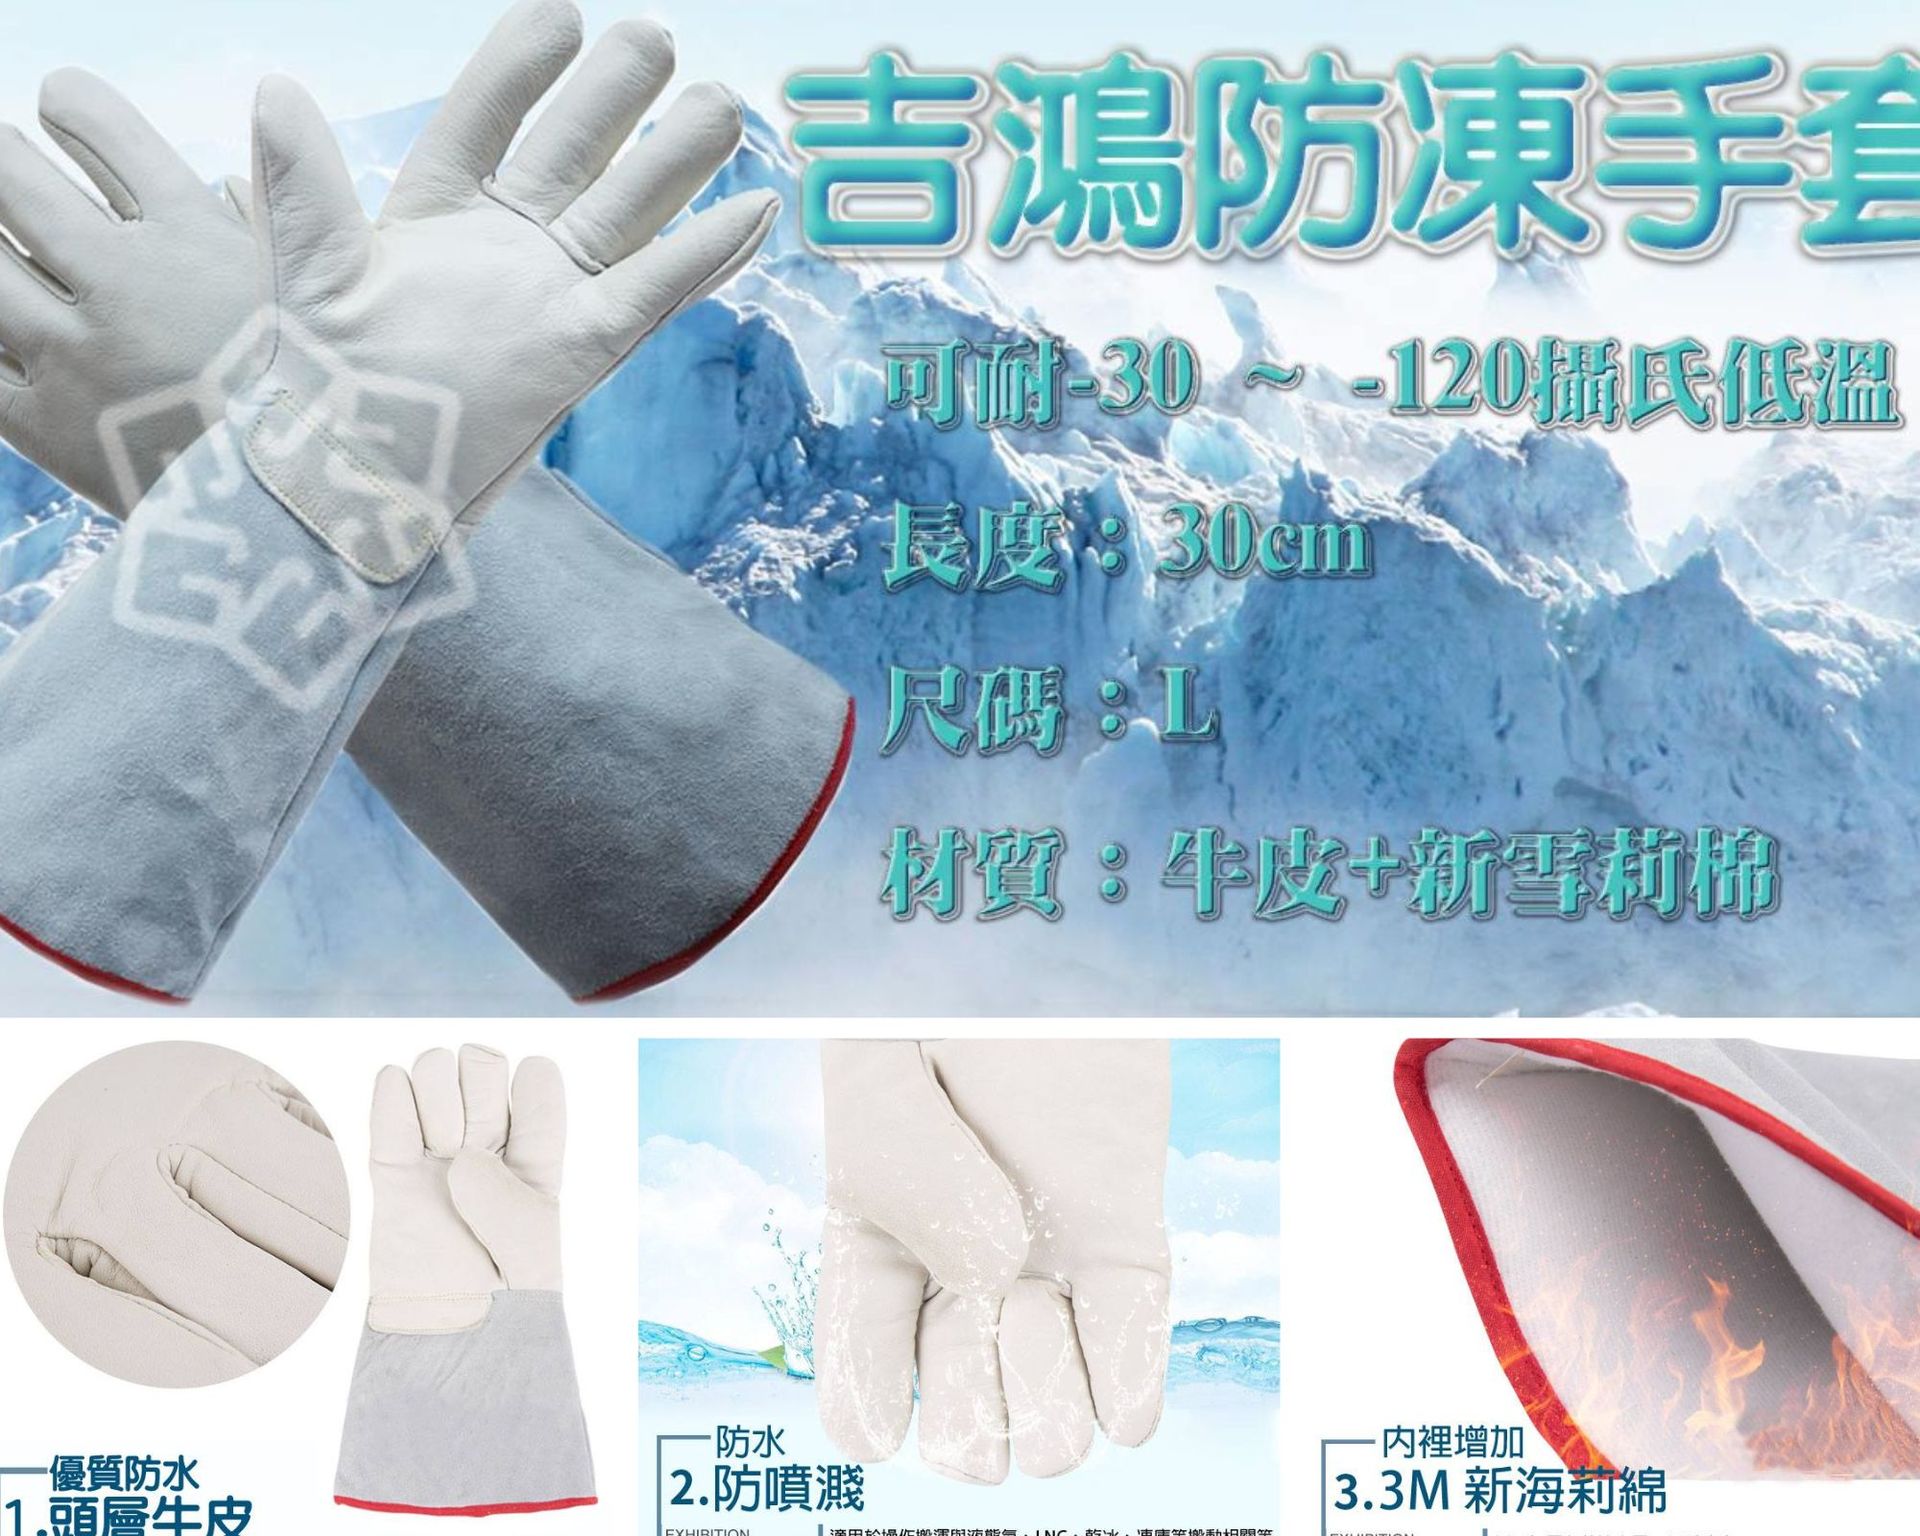 冷凍空調專用防凍手套介紹